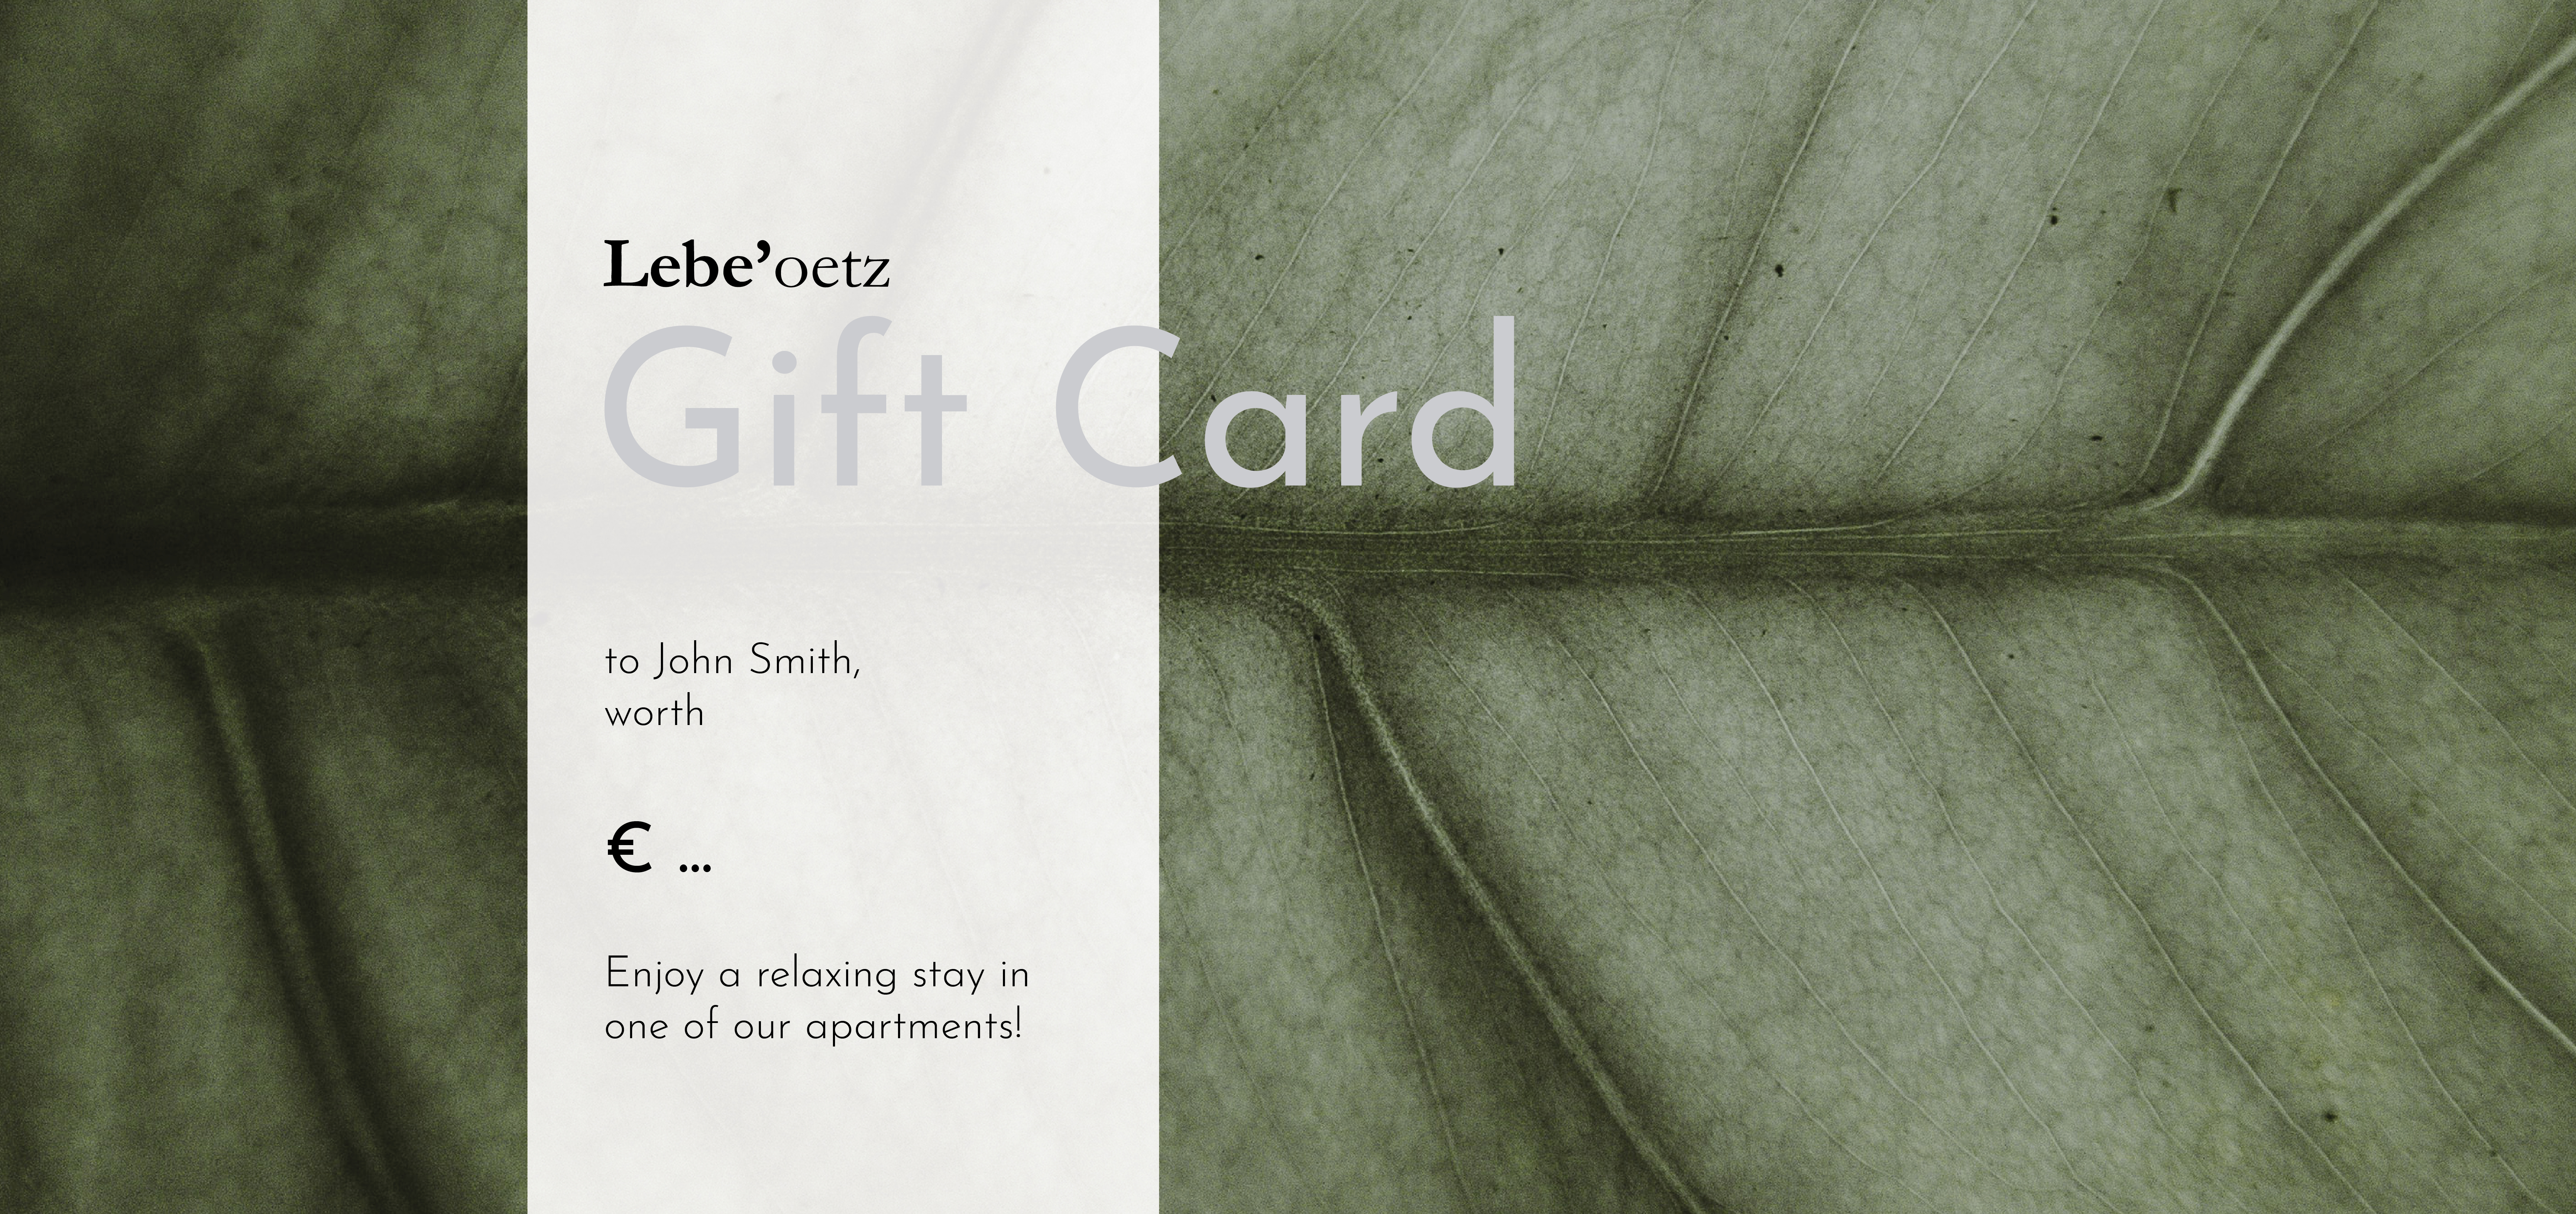 Gift Card Oetz